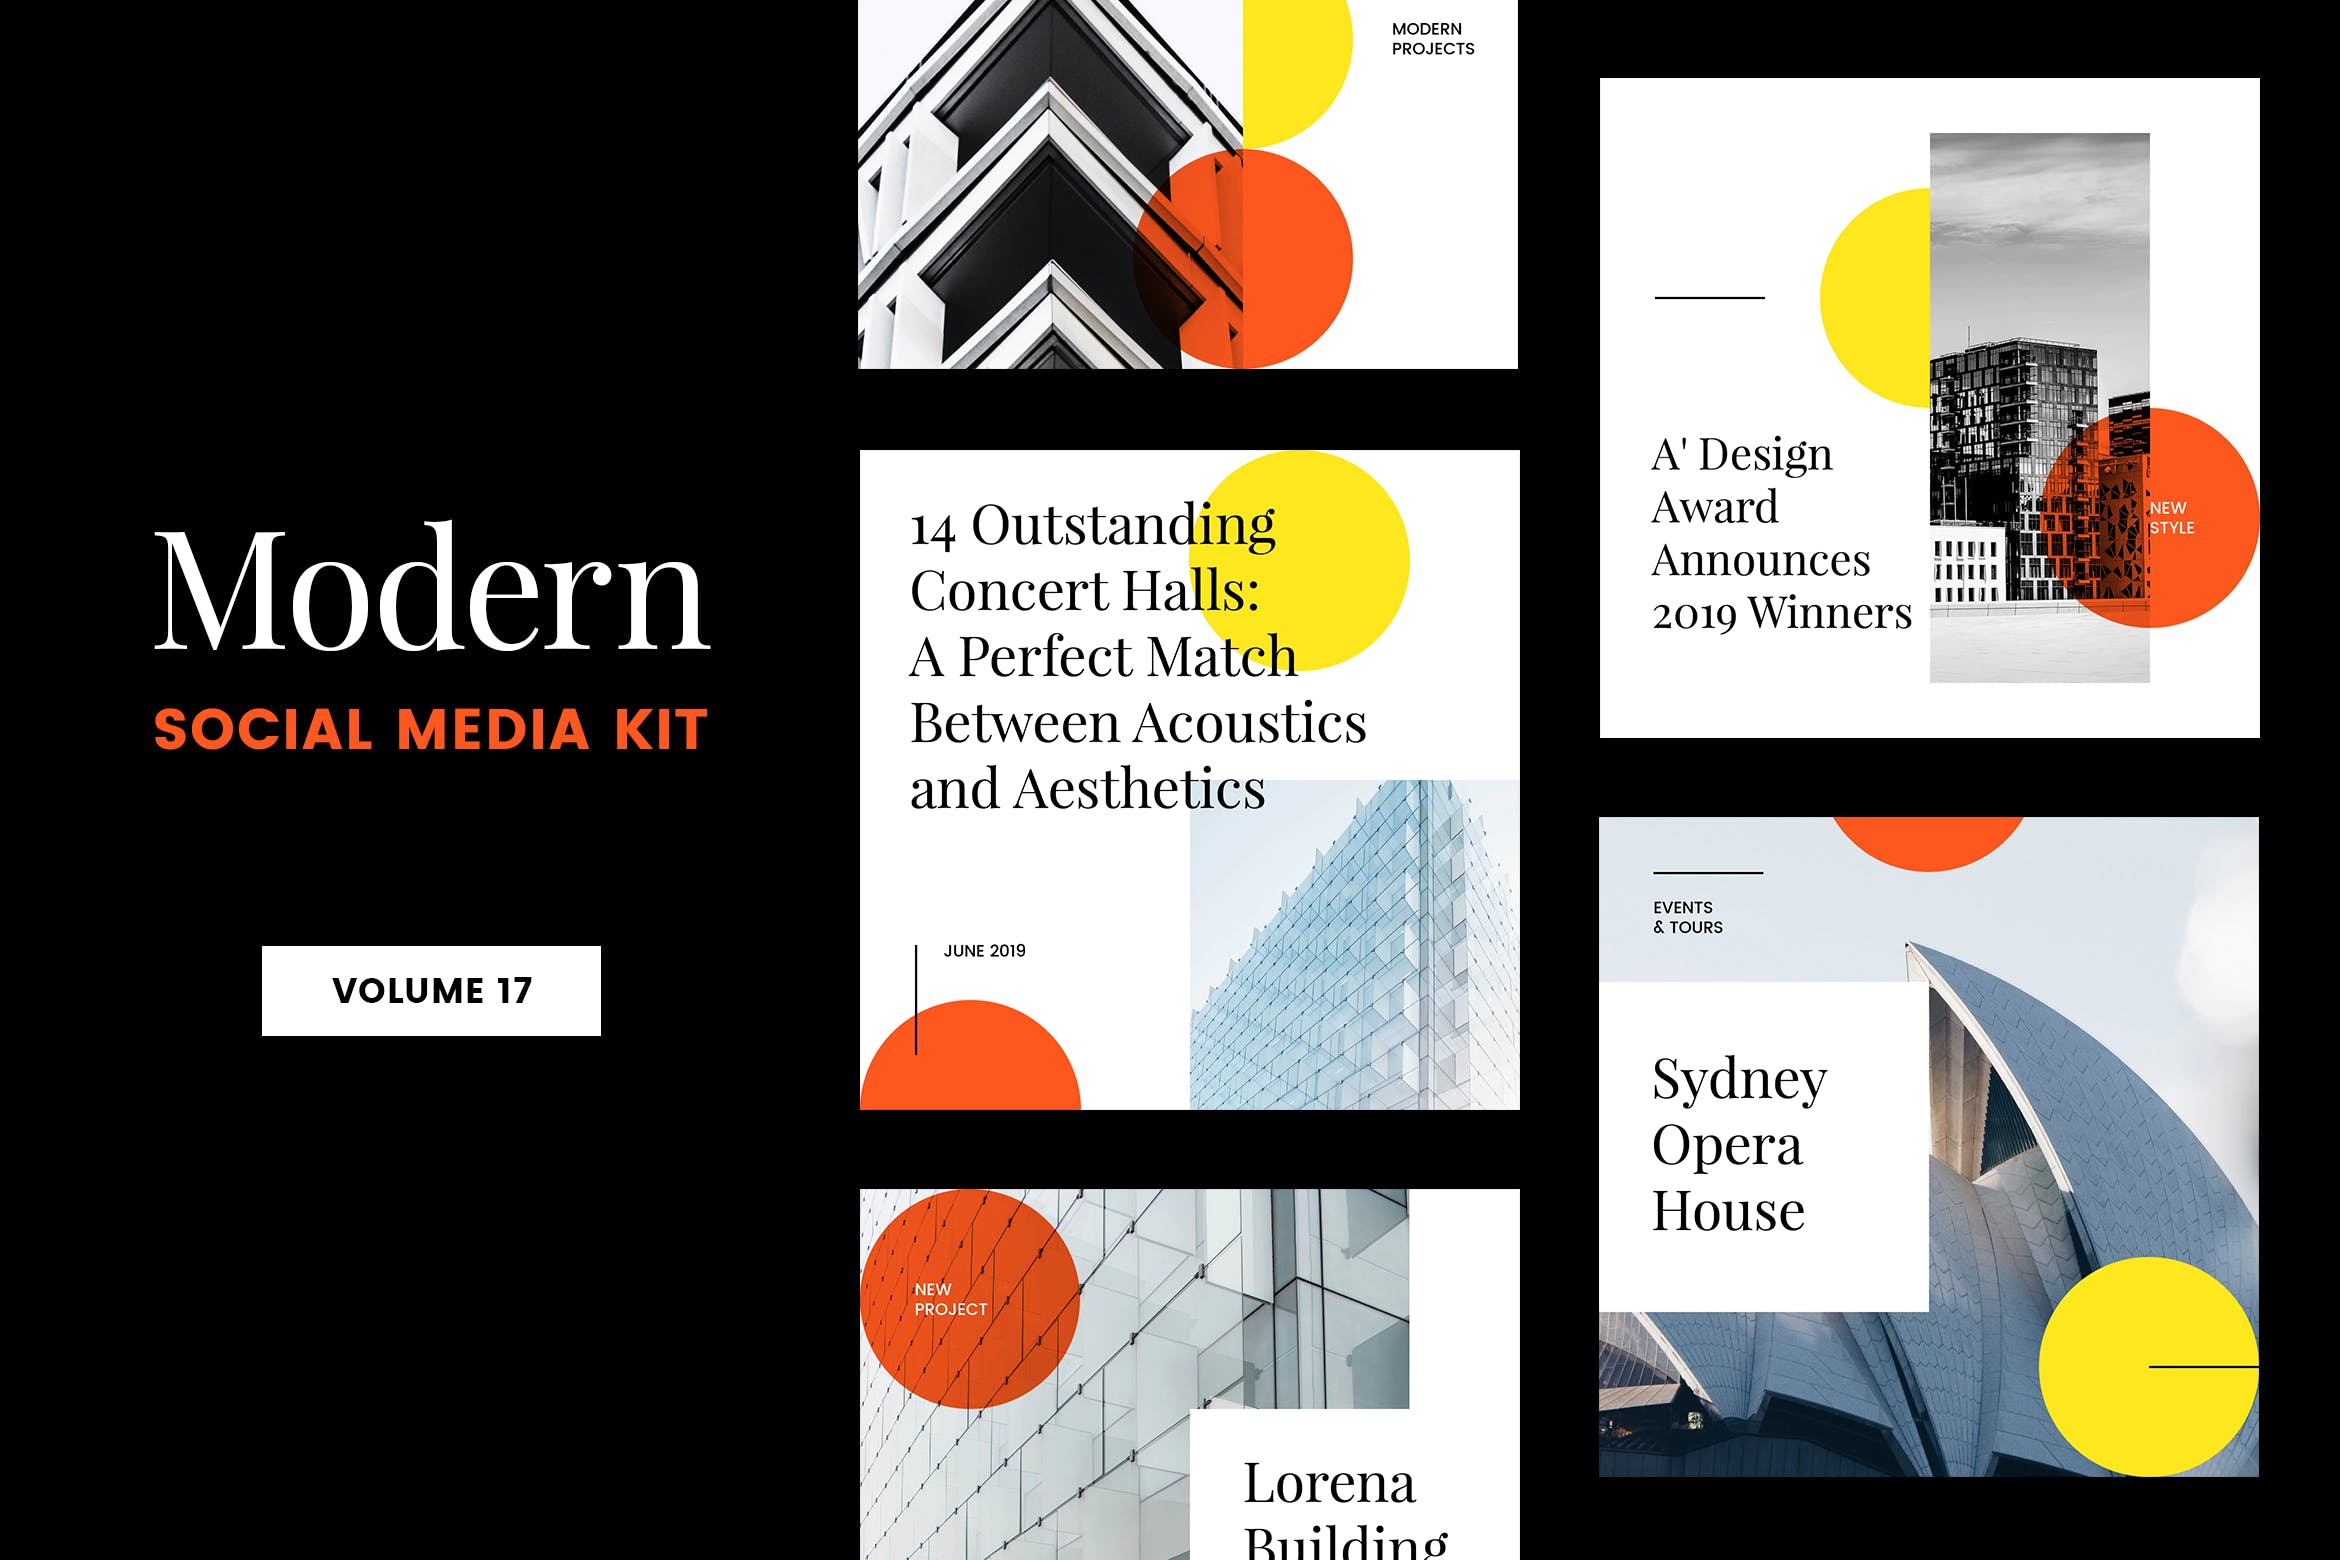 现代设计风格Instagram社交媒体品牌故事推广模板大洋岛精选v17 Modern Social Media Kit (Vol. 17)插图